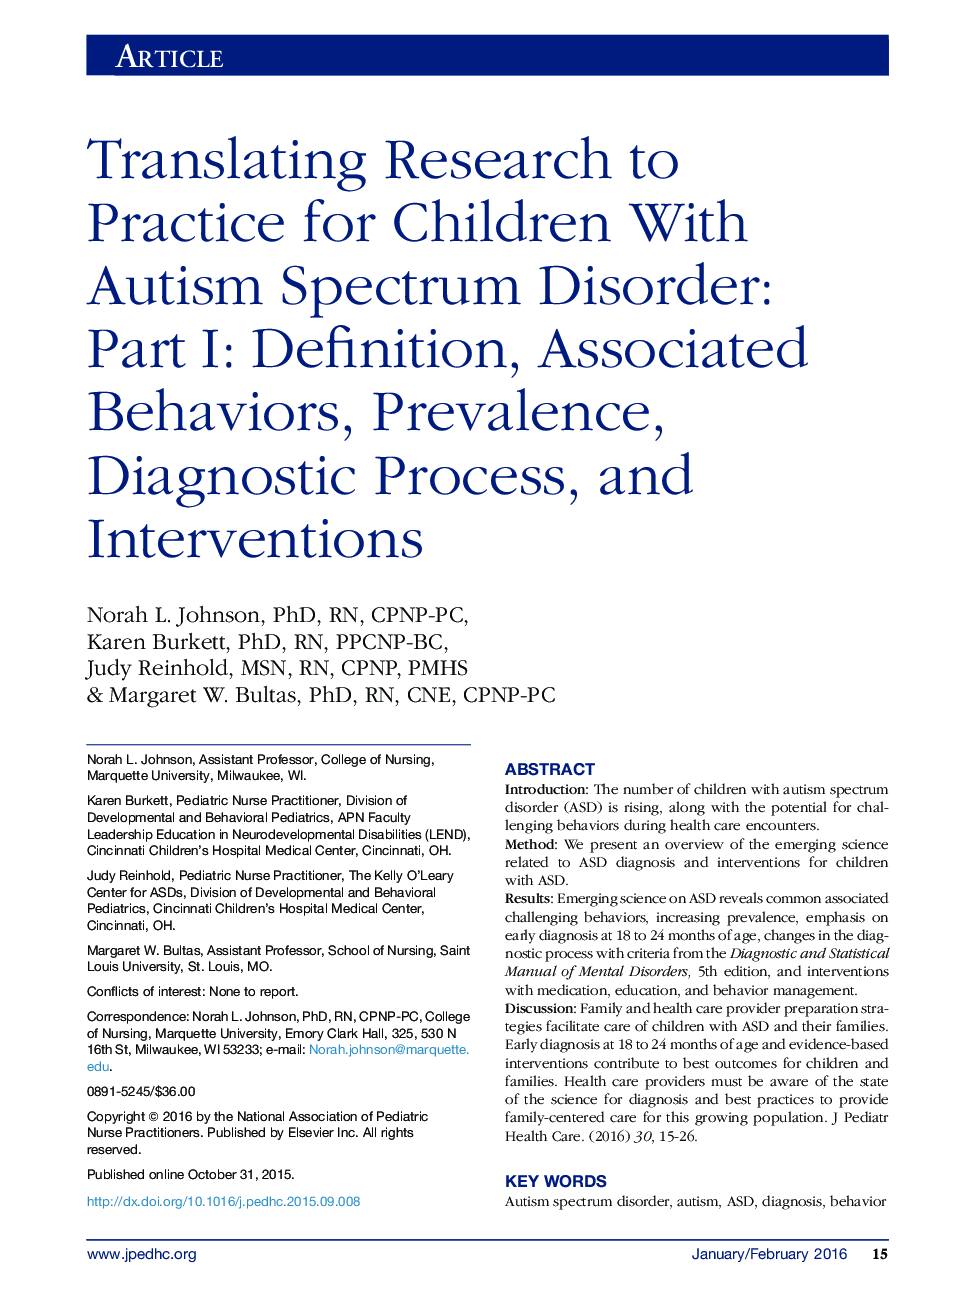 ترجمه پژوهش برای تمرین برای کودکان مبتلا به اختلال طیف اوتیسم: قسمت اول: تعریف، رفتارهای مرتبط، شیوع، فرآیند تشخیصی و مداخلات